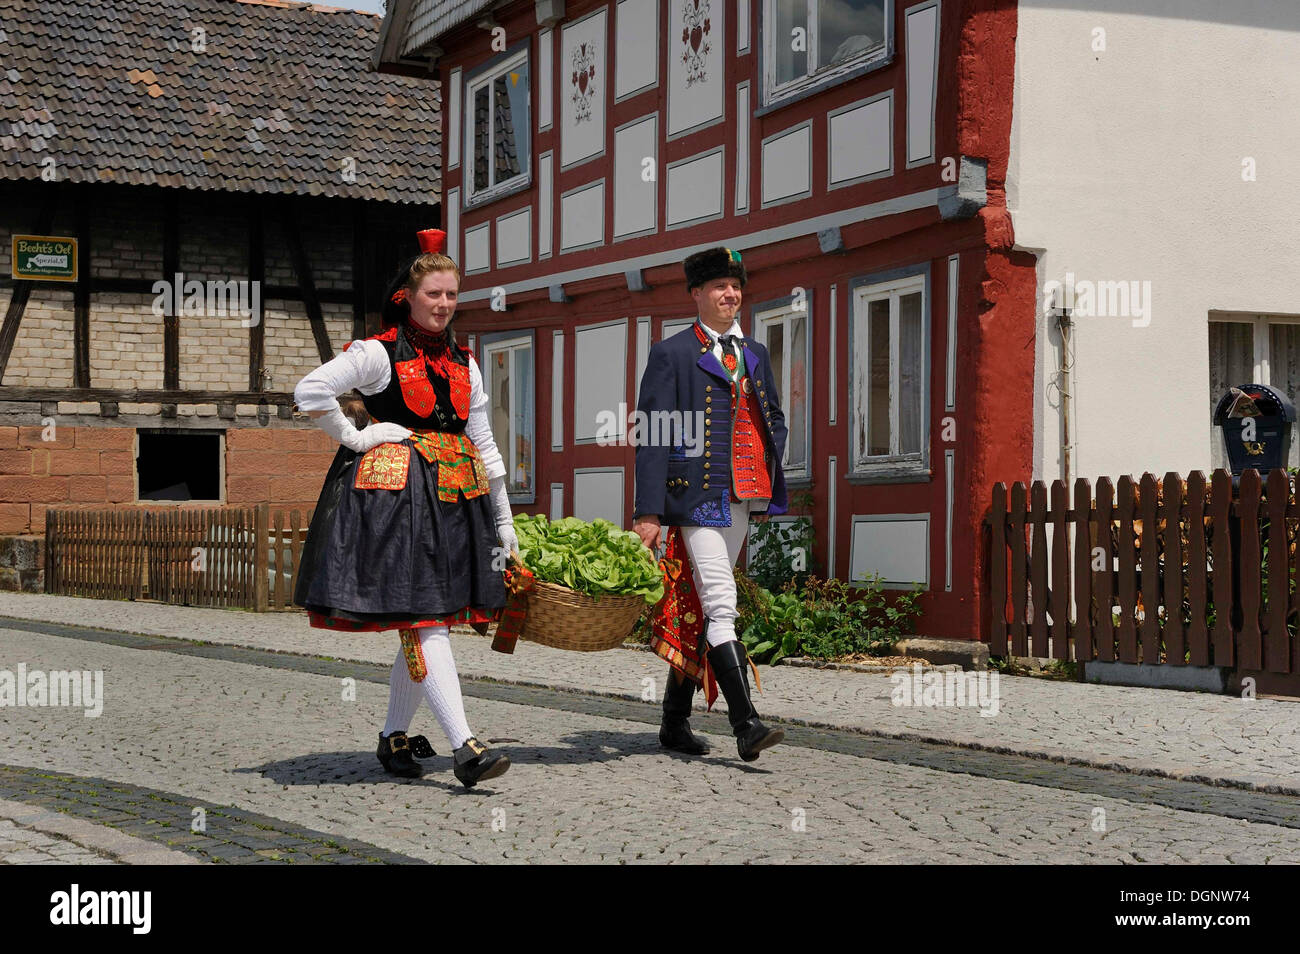 Schwalm couple wearing their traditional costume, Salatkirmes, Salad Fair, Ziegenhain, Schwalmstadt, Schwalm-Eder-Region Stock Photo